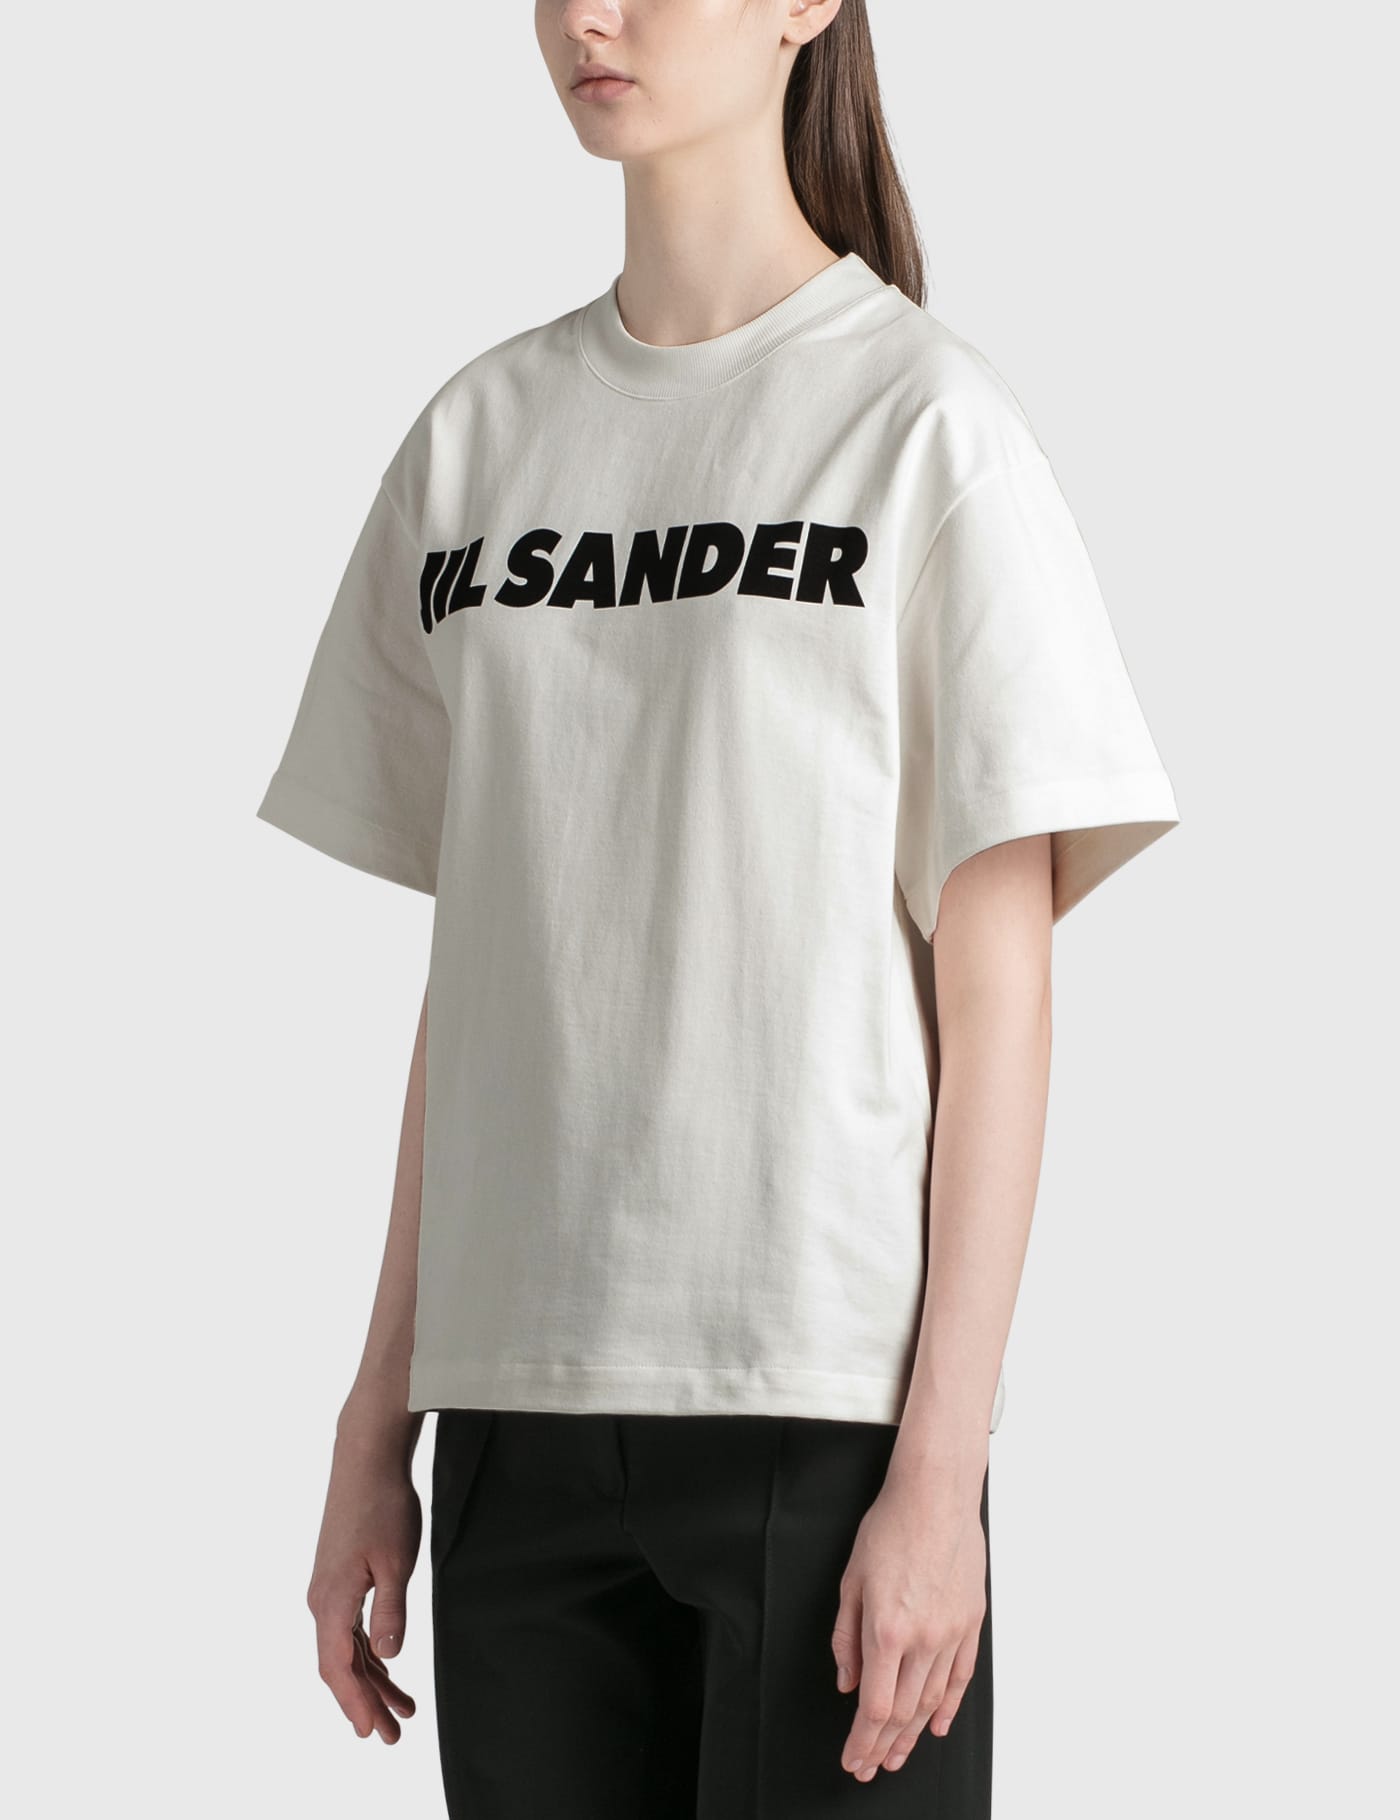 Jil Sander - Jil Sander Logo Cotton T-shirt | HBX -  ハイプビースト(Hypebeast)が厳選したグローバルファッション&ライフスタイル